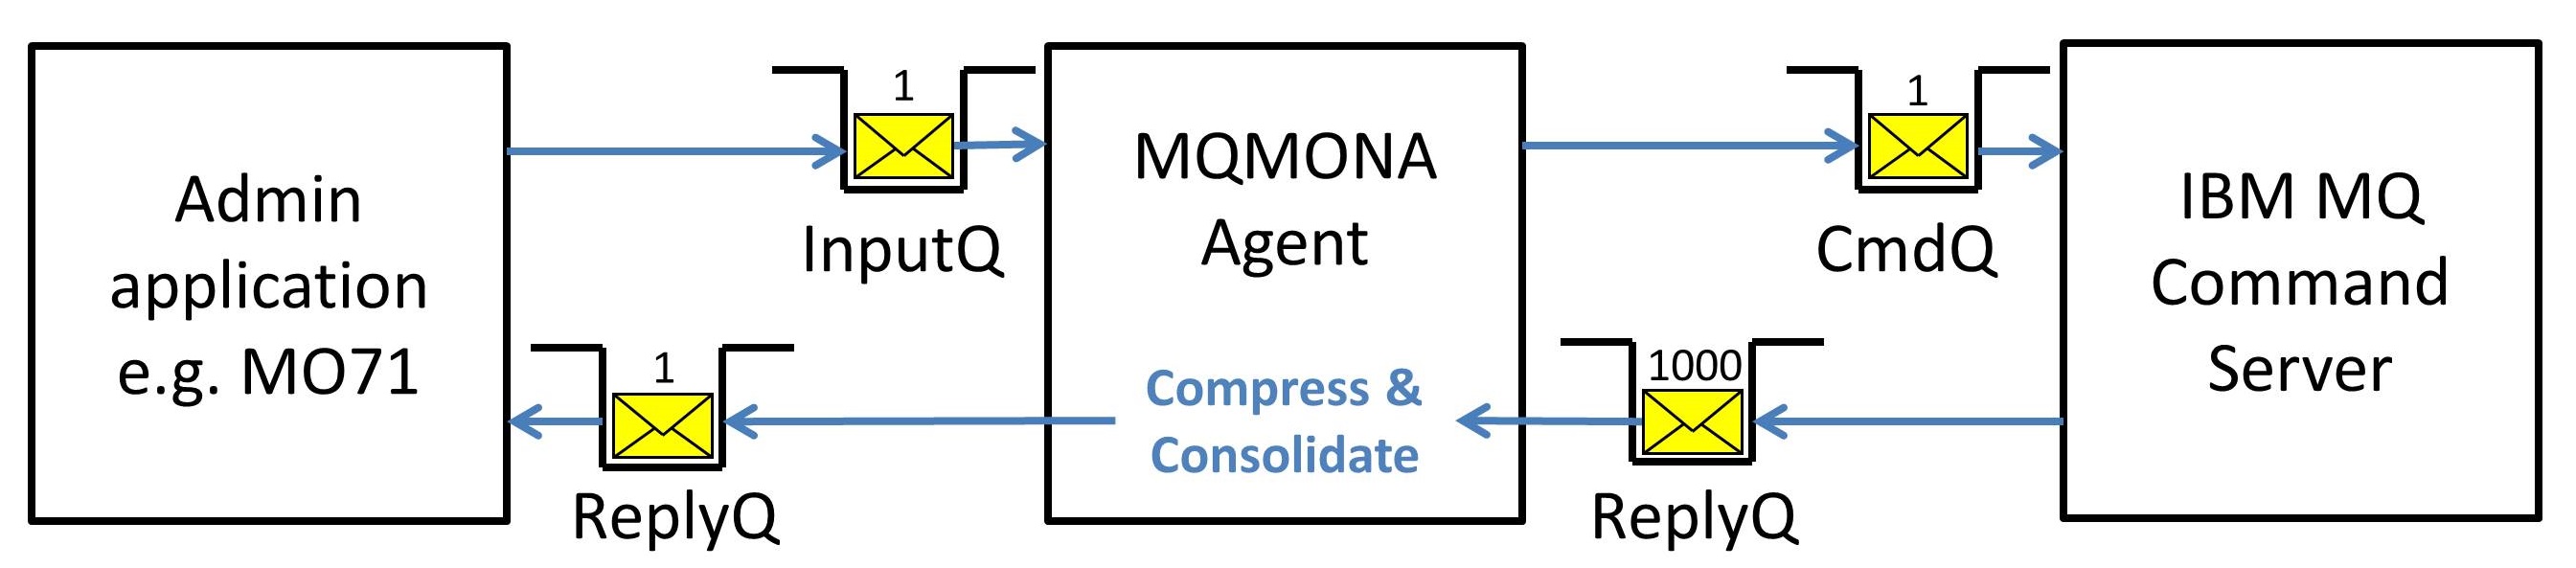 MQMONA work flow